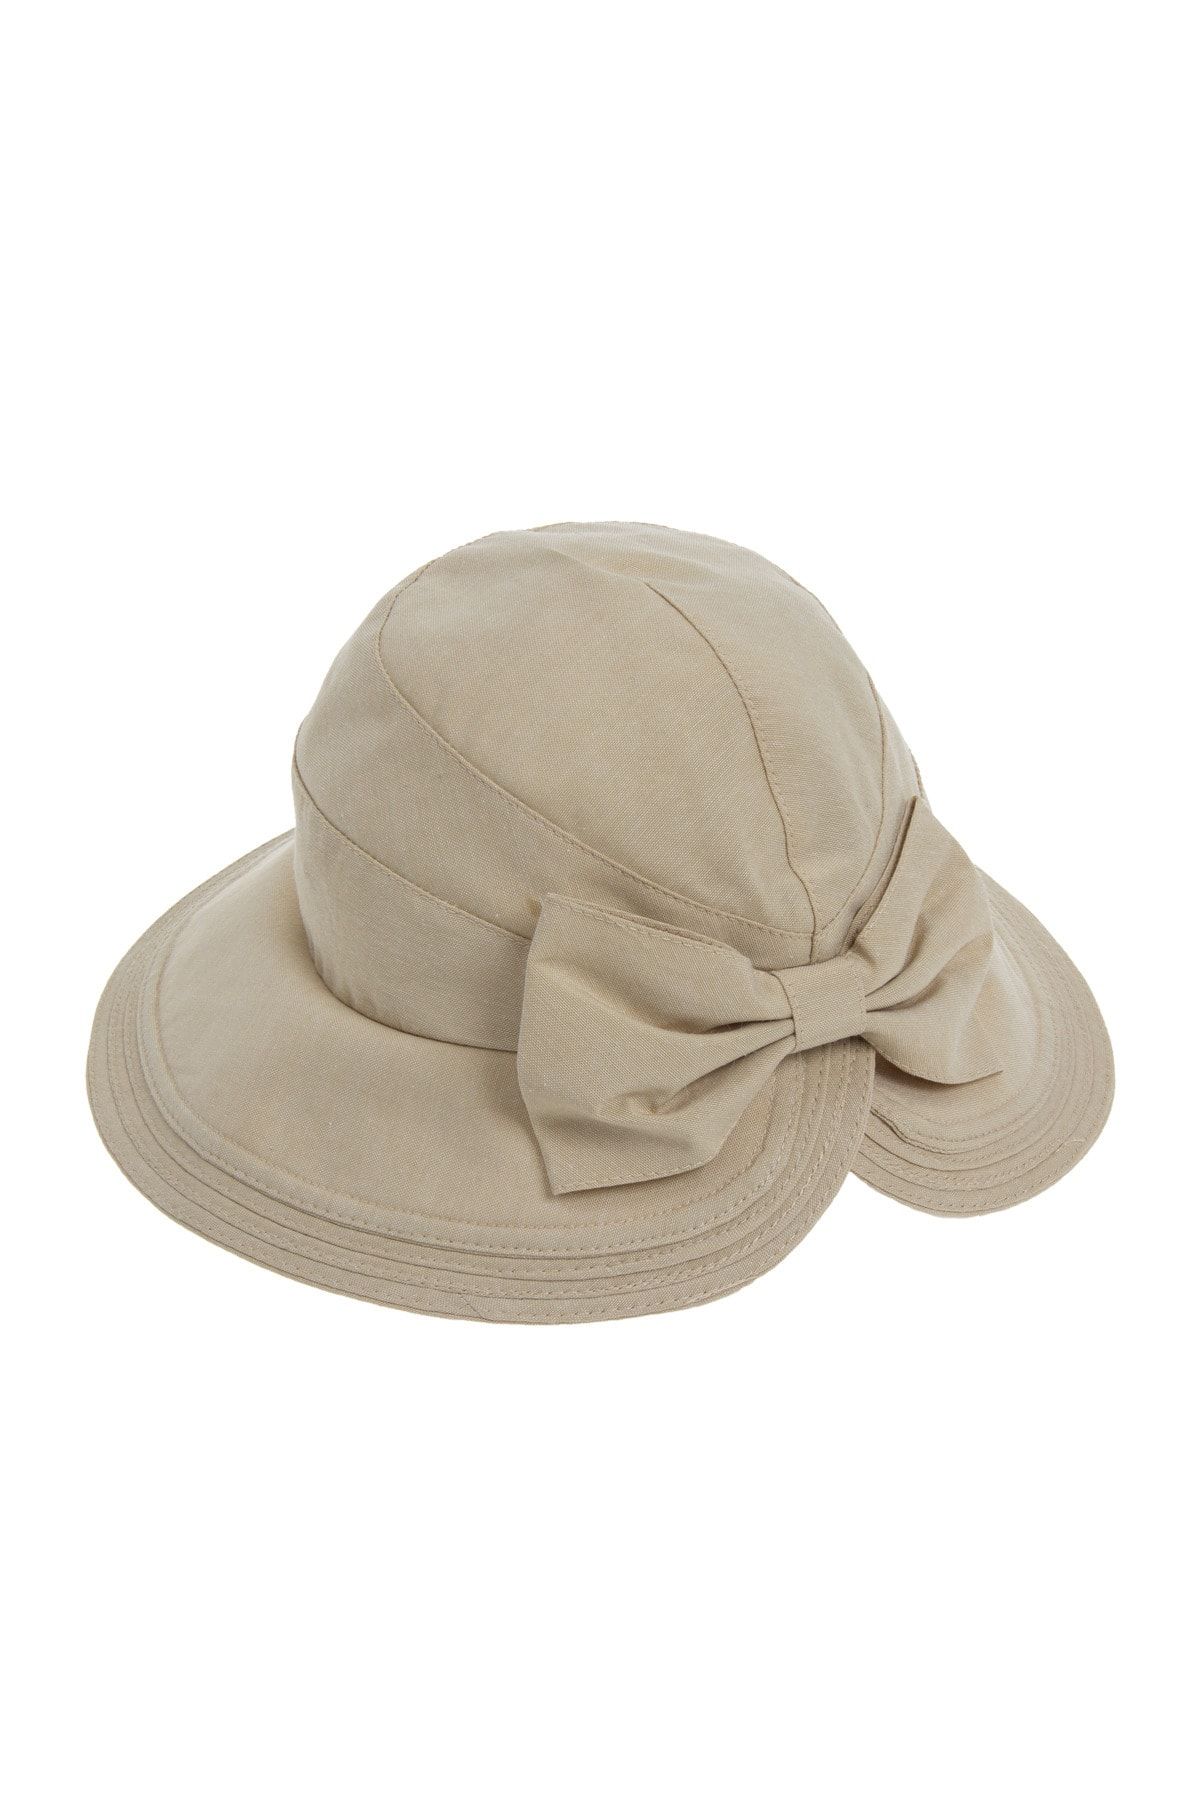 Bay Şapkacı - Yazlık Kadın Kurdeleli Şapka 1083 Krem